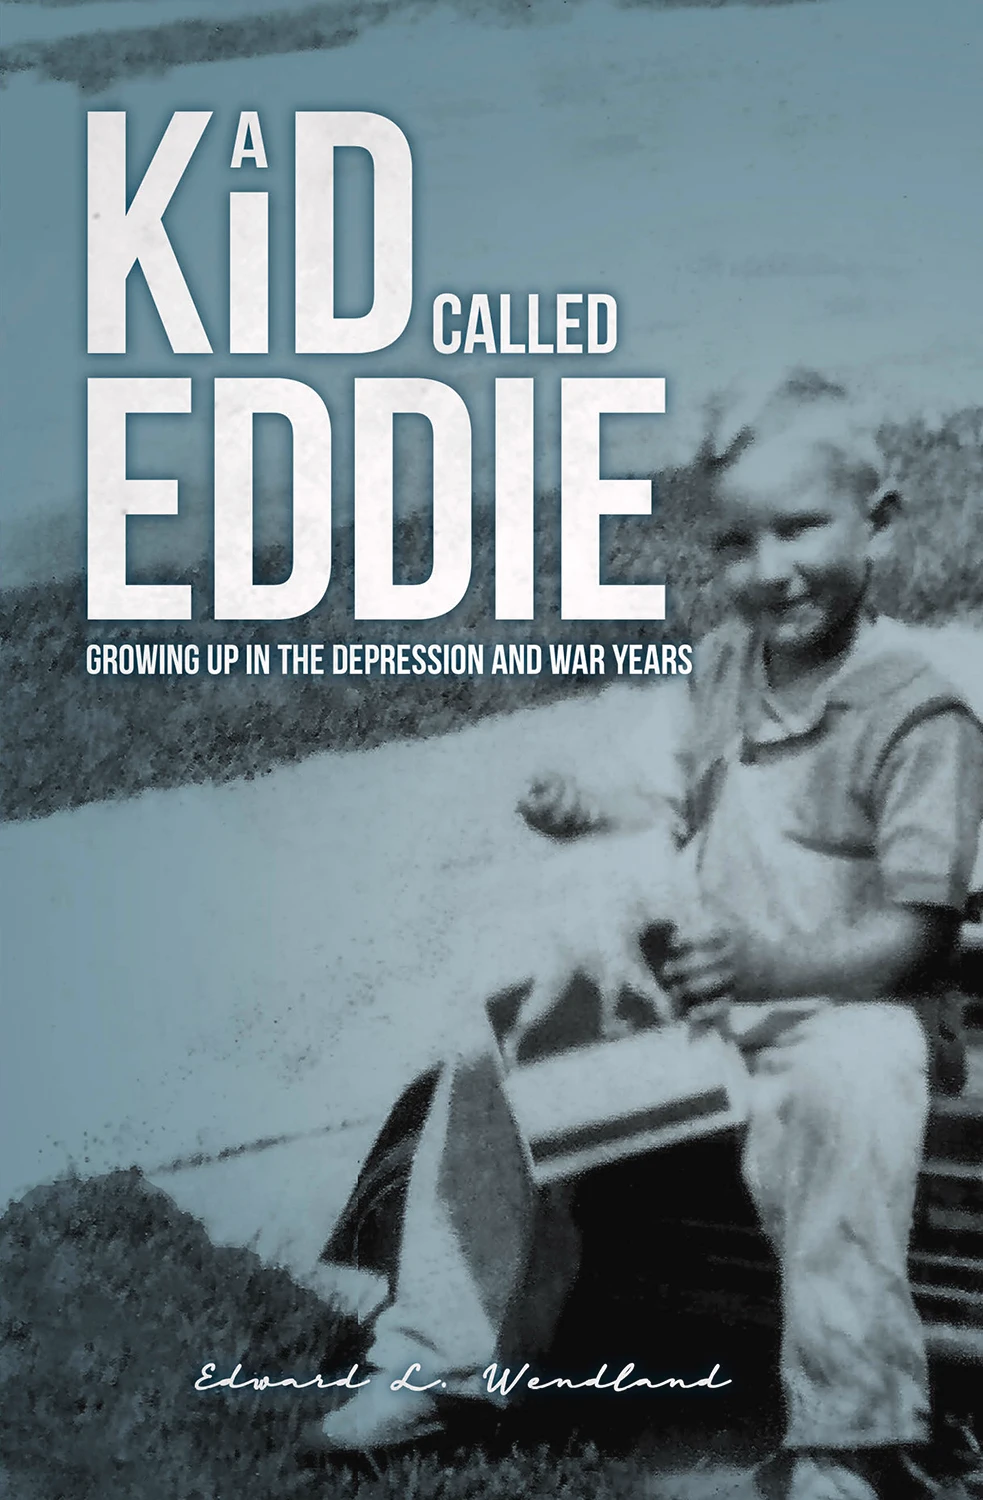 A kid called eddie book cover